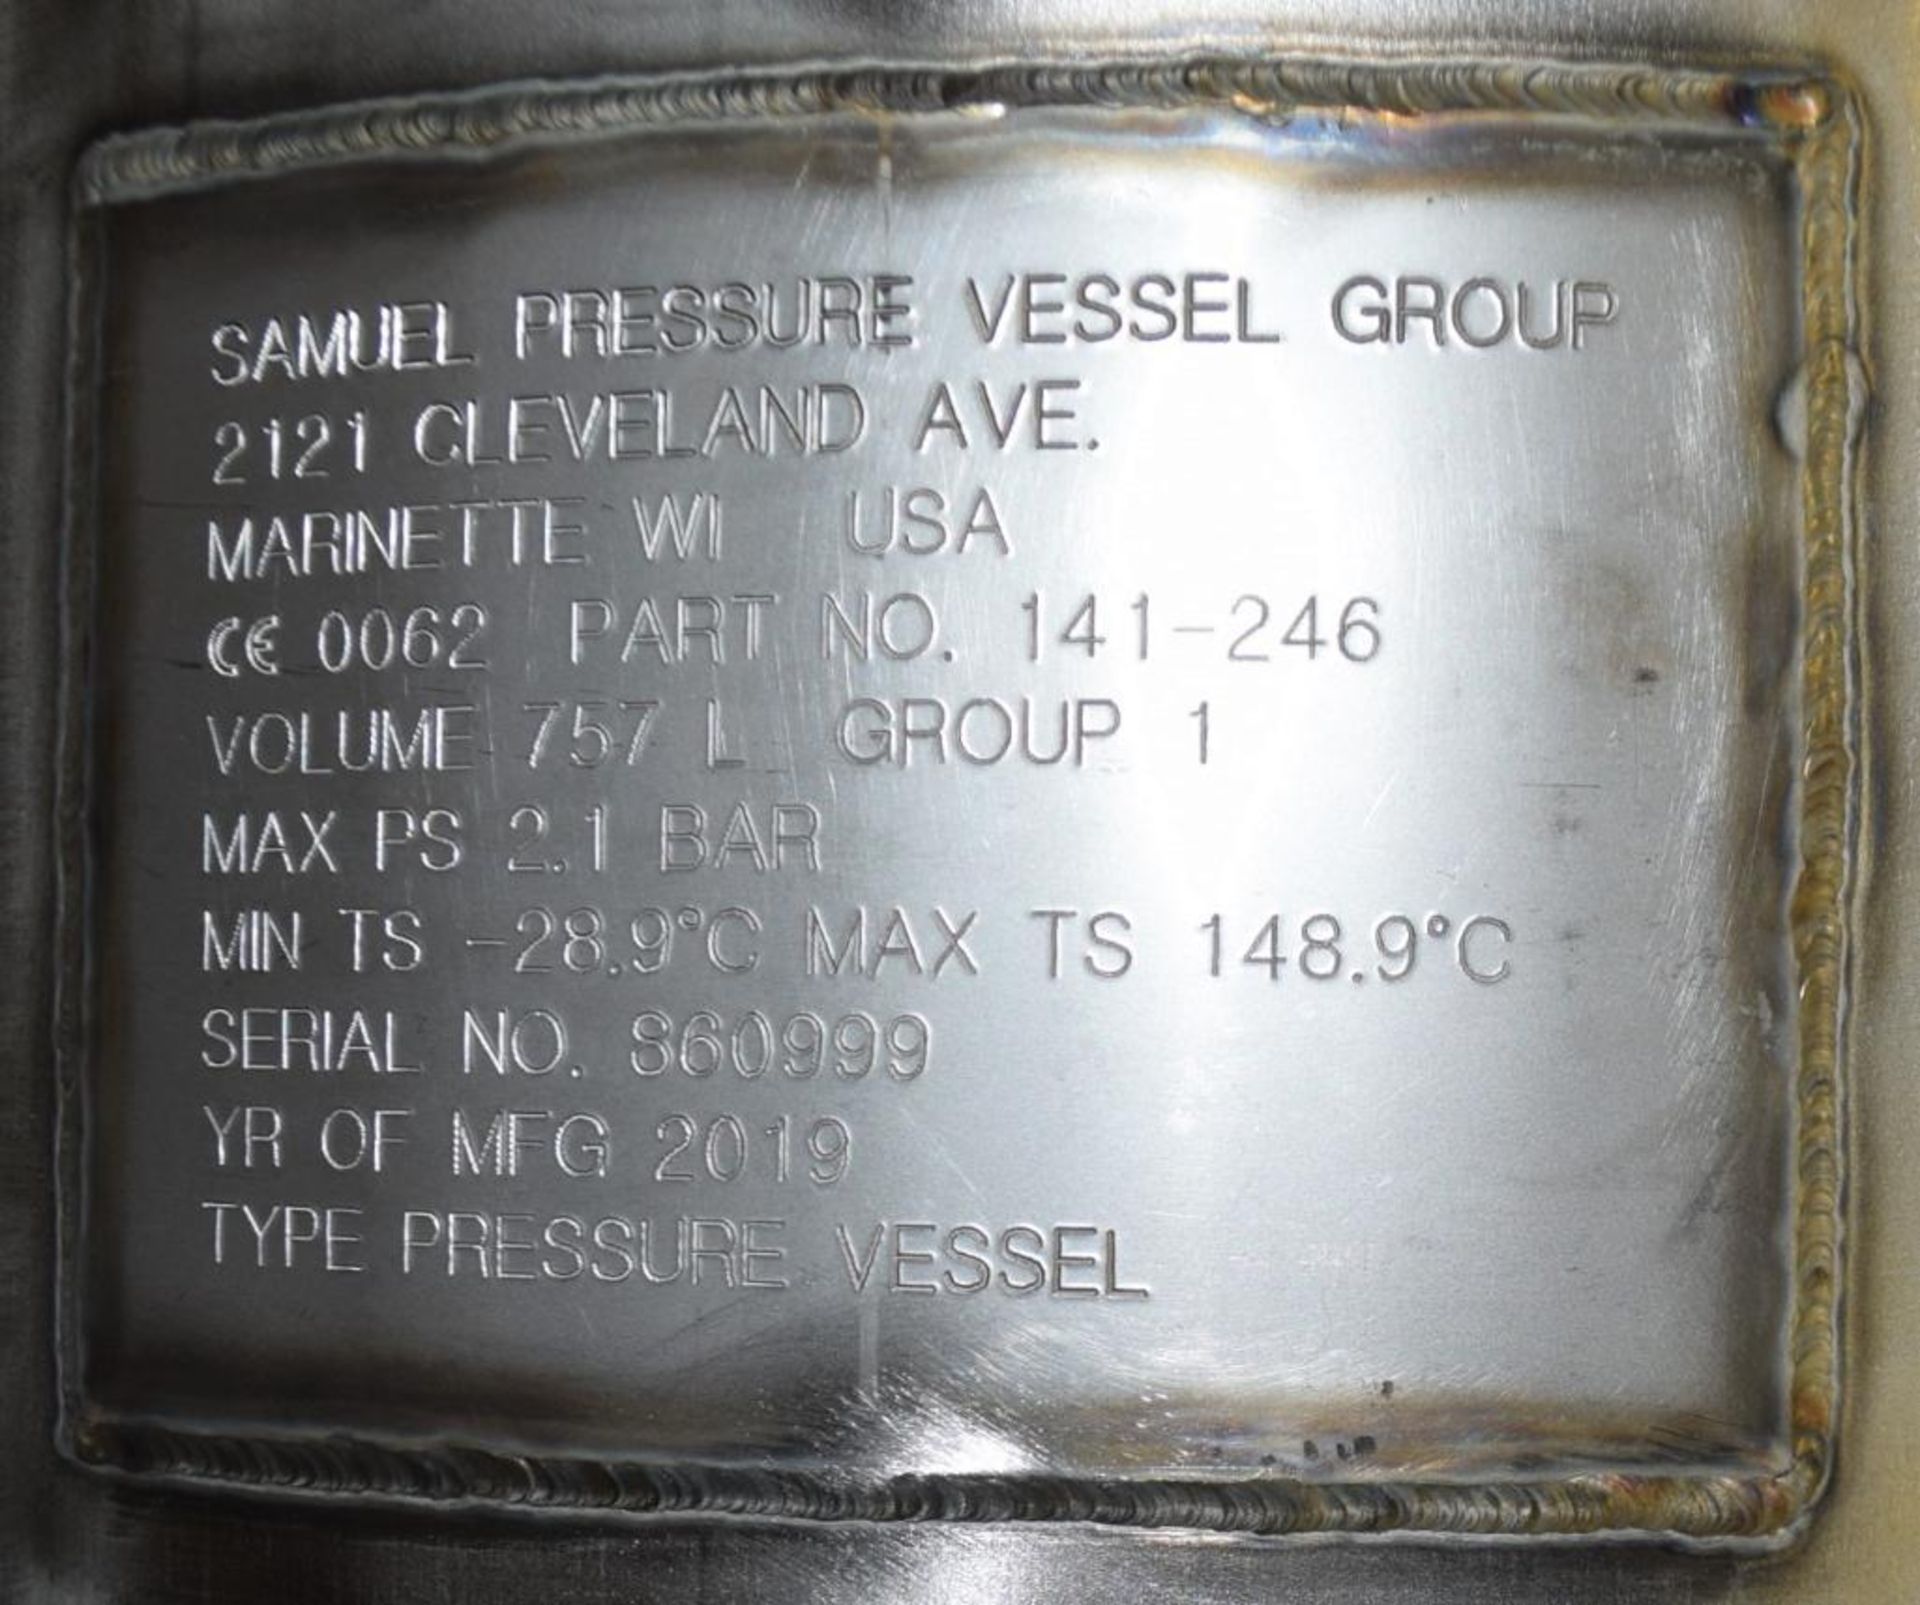 UNUSED Samuel Pressure Vessel Group Bolt Together Distillation Column - Image 8 of 9